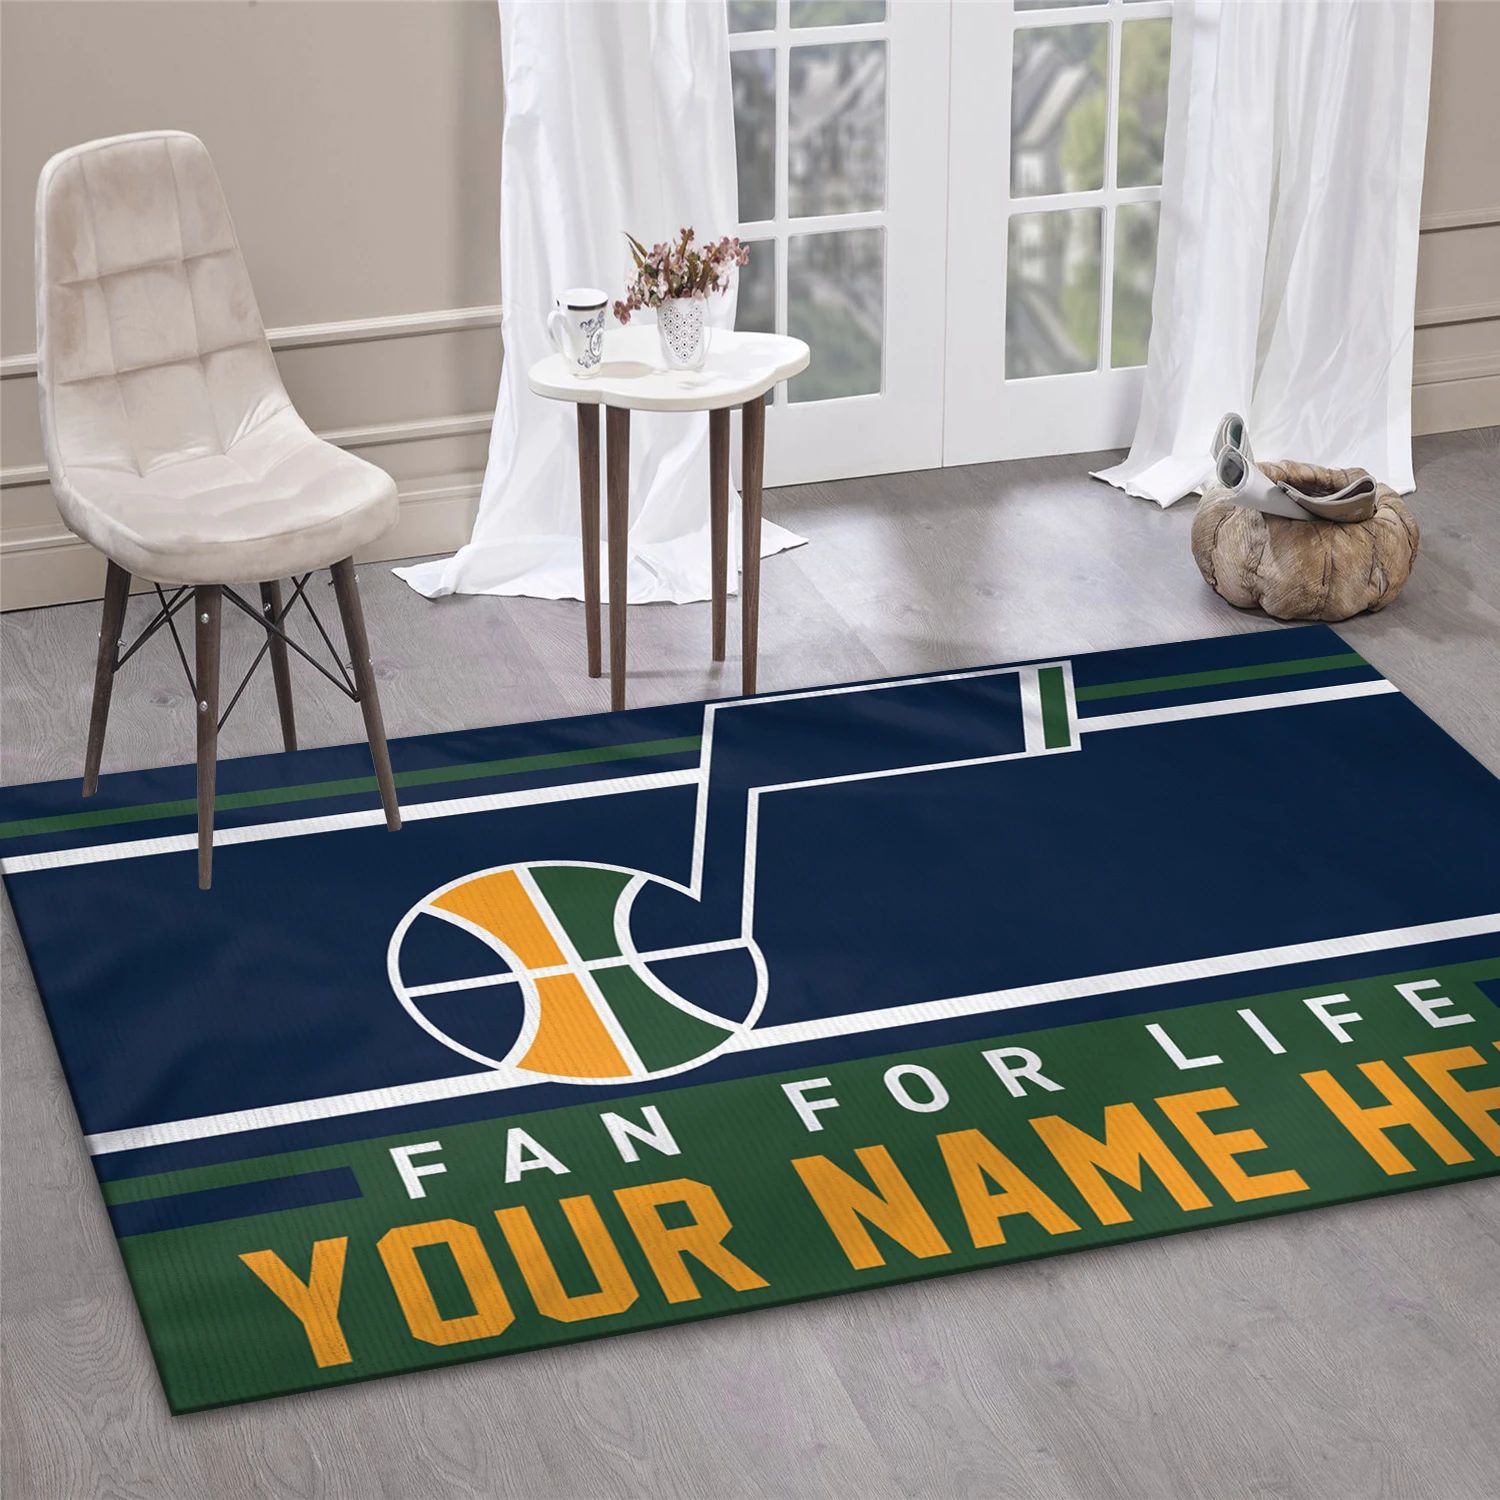 Utah Jazz NBA Team Logos Area Rug, Living Room Rug - Room Decor - Indoor Outdoor Rugs